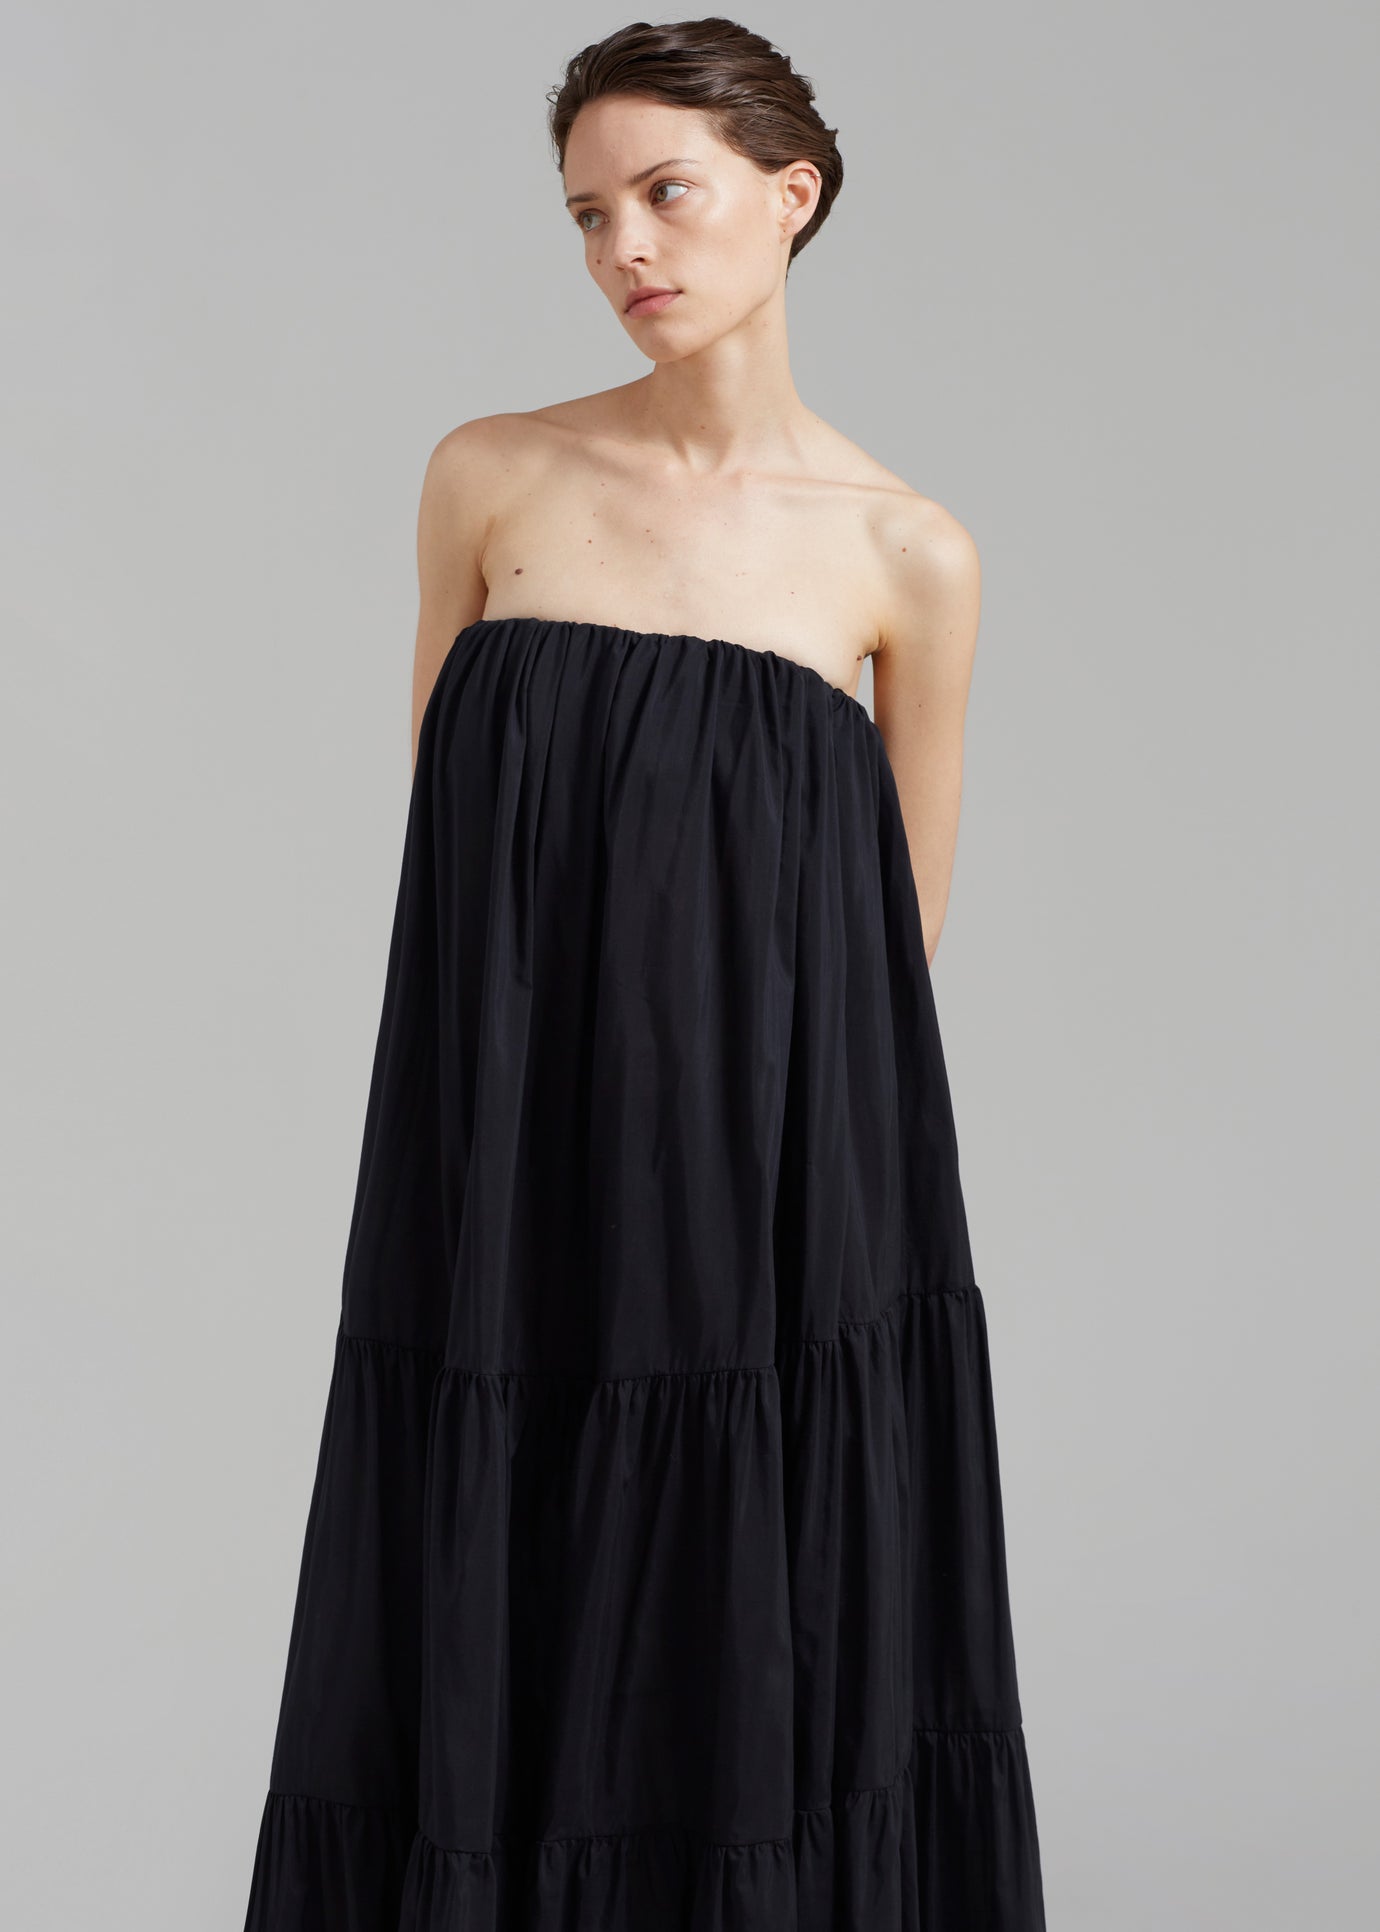 Matteau Voluminous Strapless Tiered Dress - Black